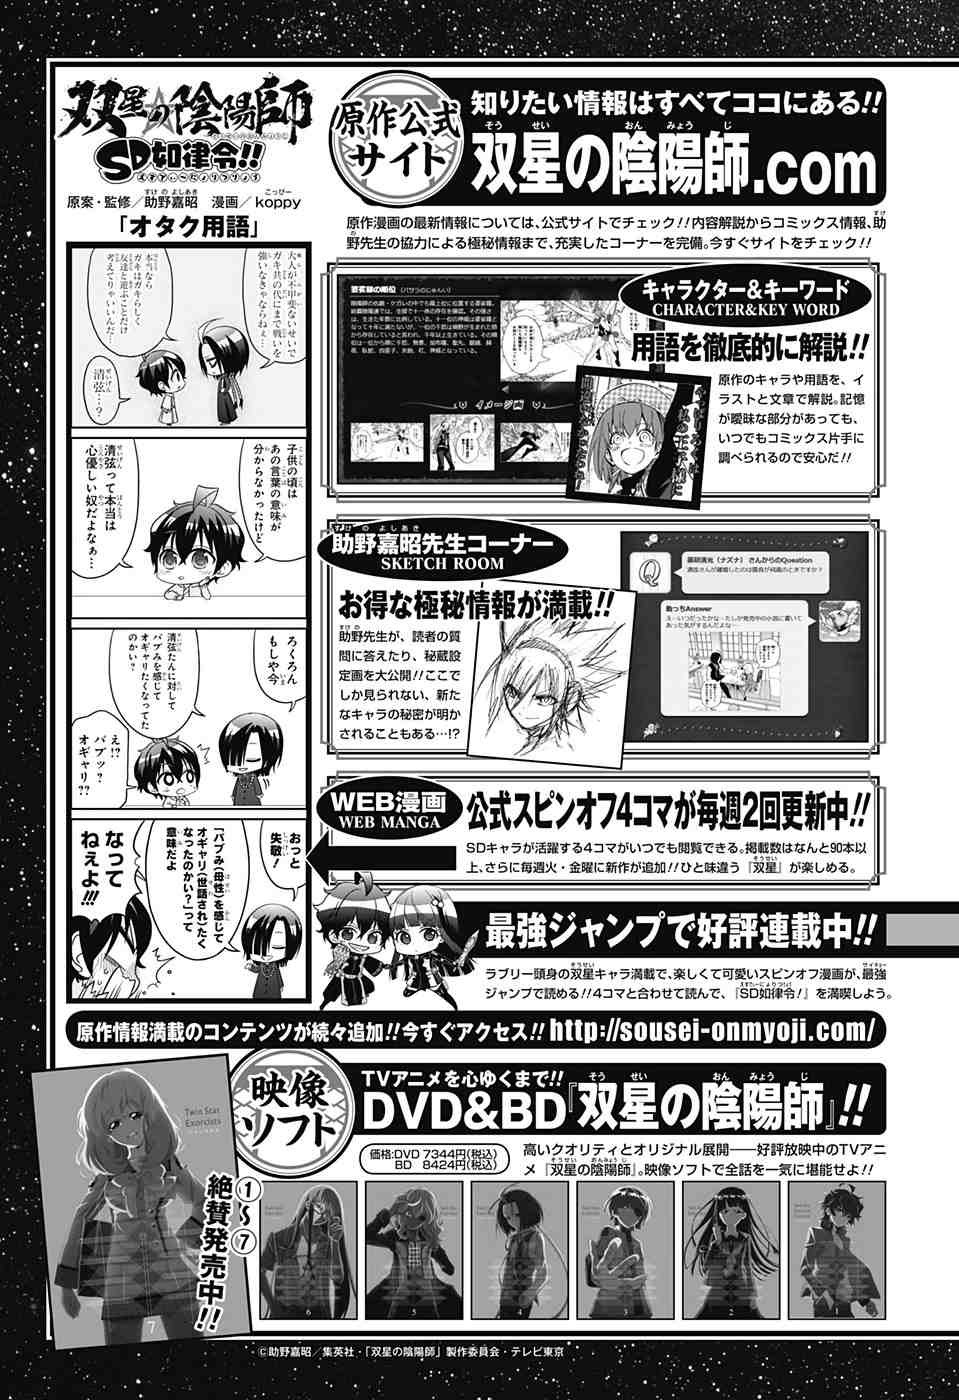 Sousei No Onmyouji Chapter 40 Page 47 Raw Sen Manga